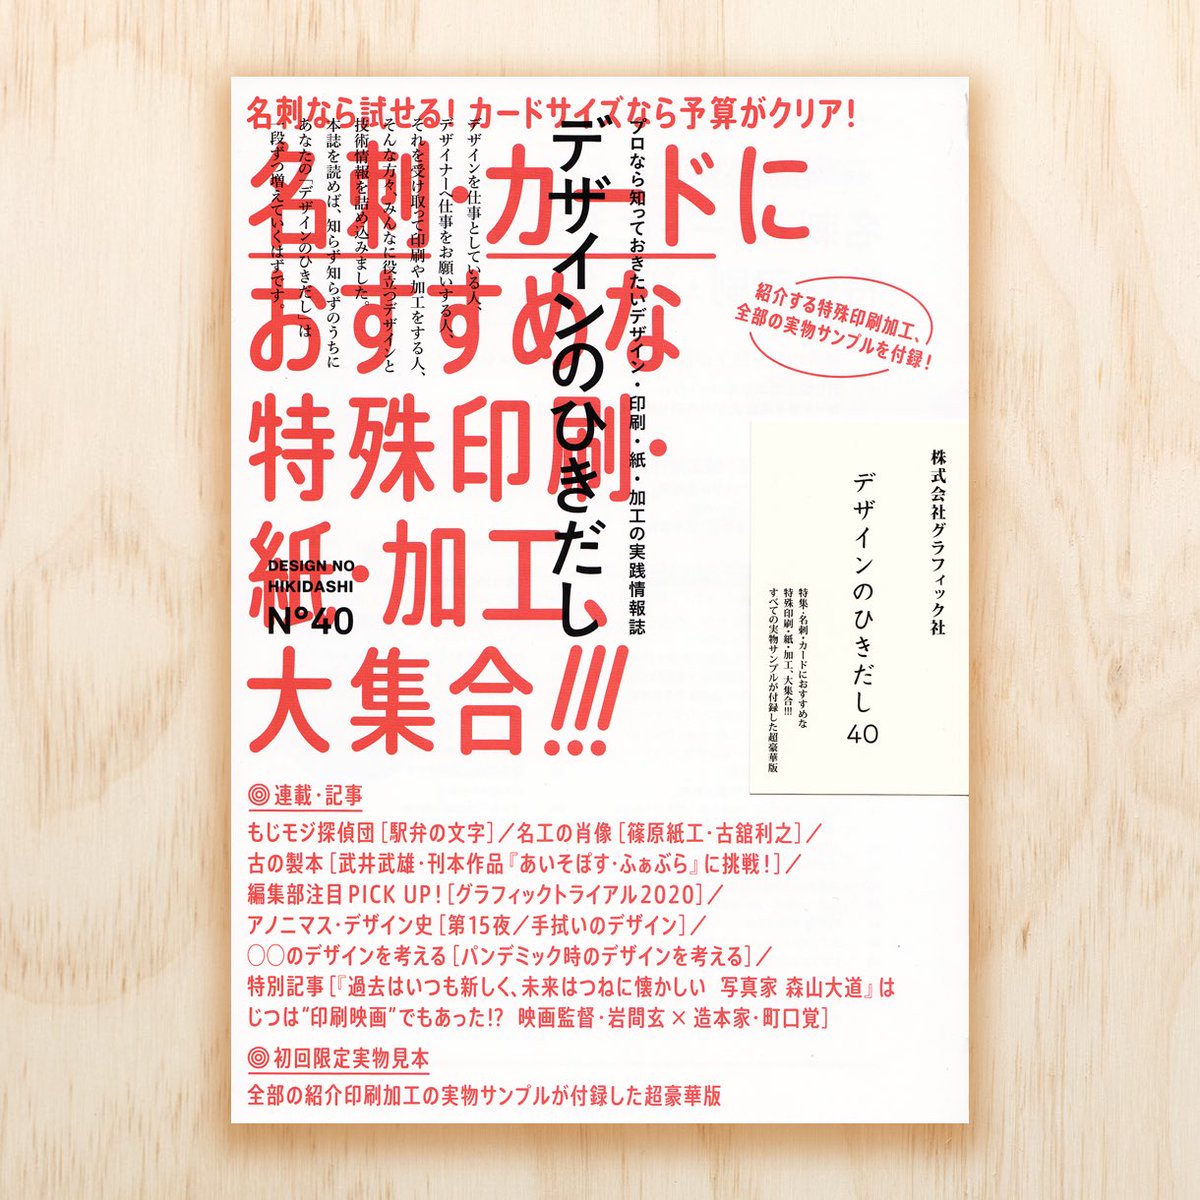 Masayuki Sato Mksd みんな大好き デザインのひきだし40 6 8頃発売 は名刺 カード特集 誌面で紹介されている全84種の名刺サイズのサンプルが付録 特殊印刷 加工が目を引く すごい名刺 ショップカード大紹介 P 08 にてmaniackers Designの